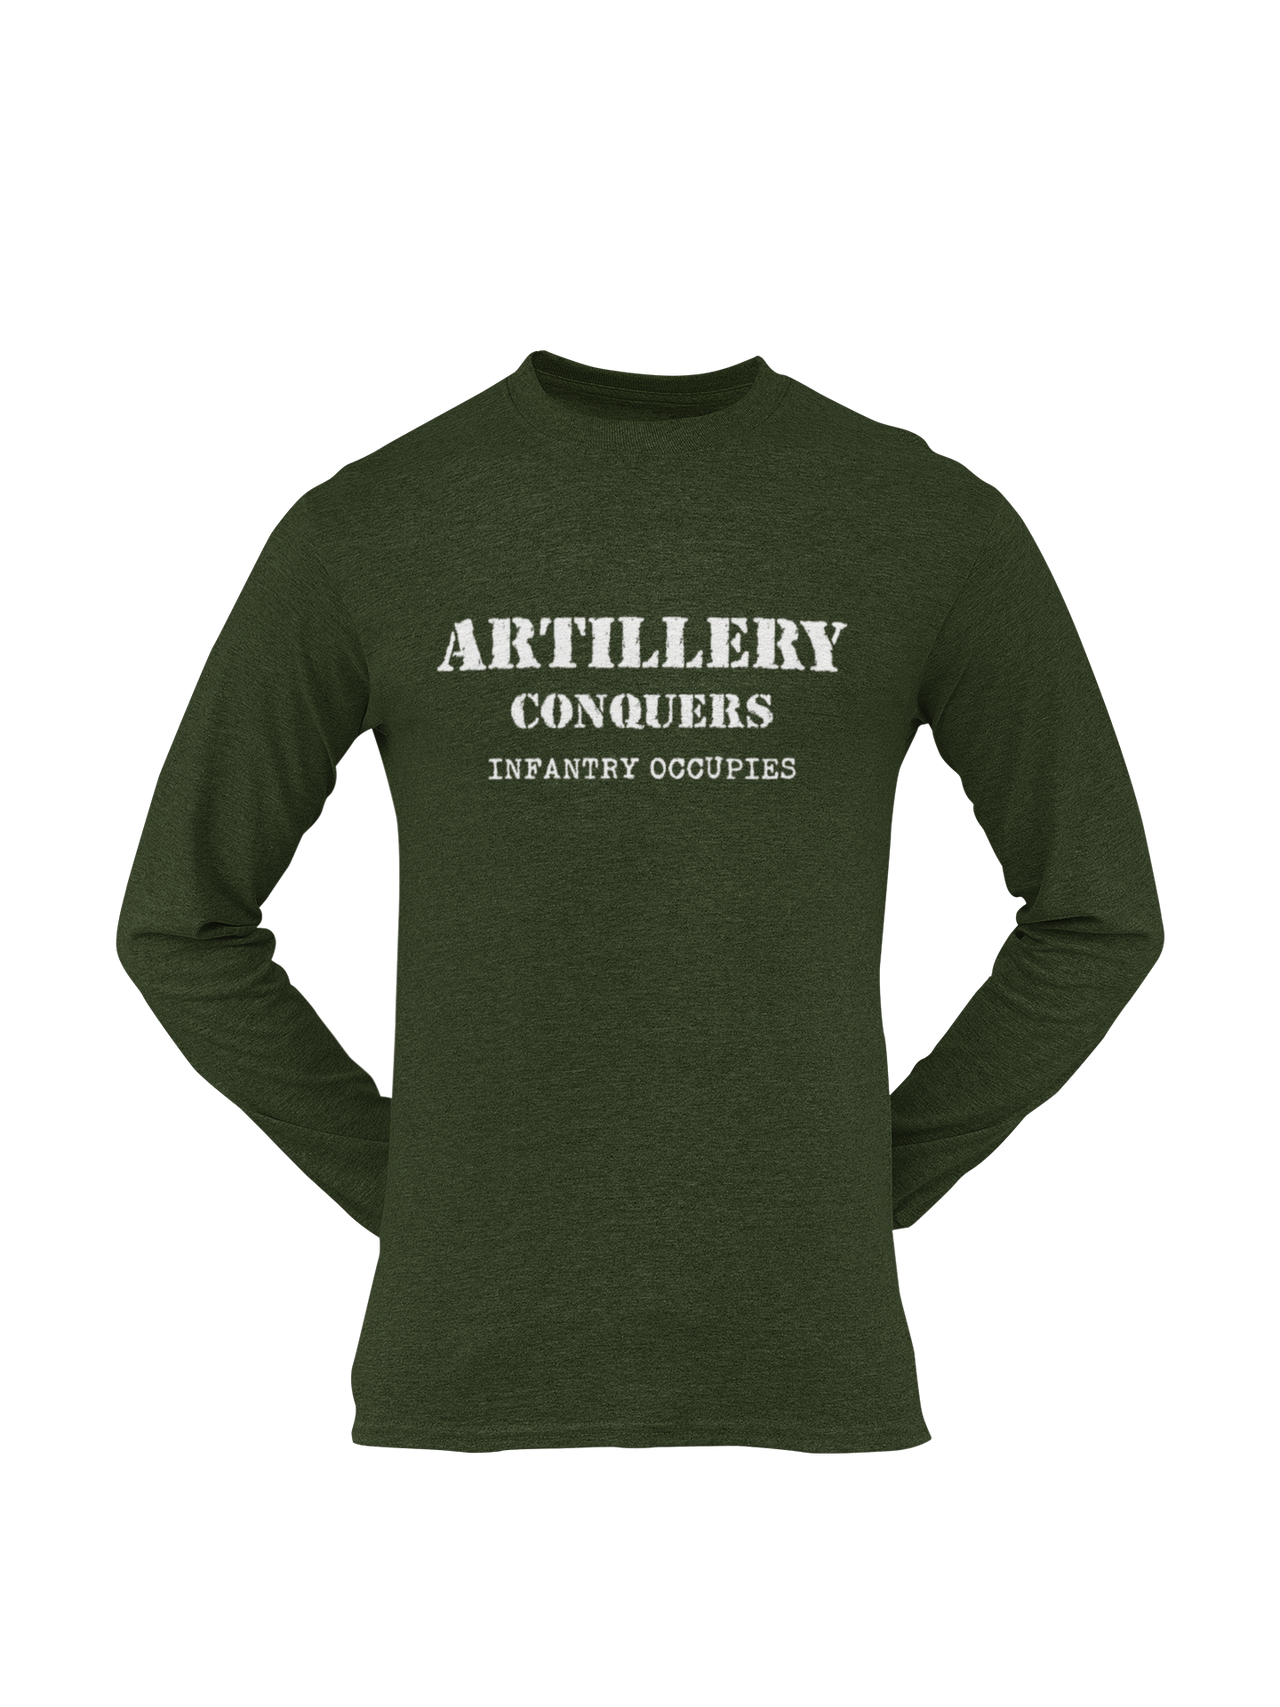 Artillery T-shirt - Artillery Conquers, Infantry Occupies (Men)